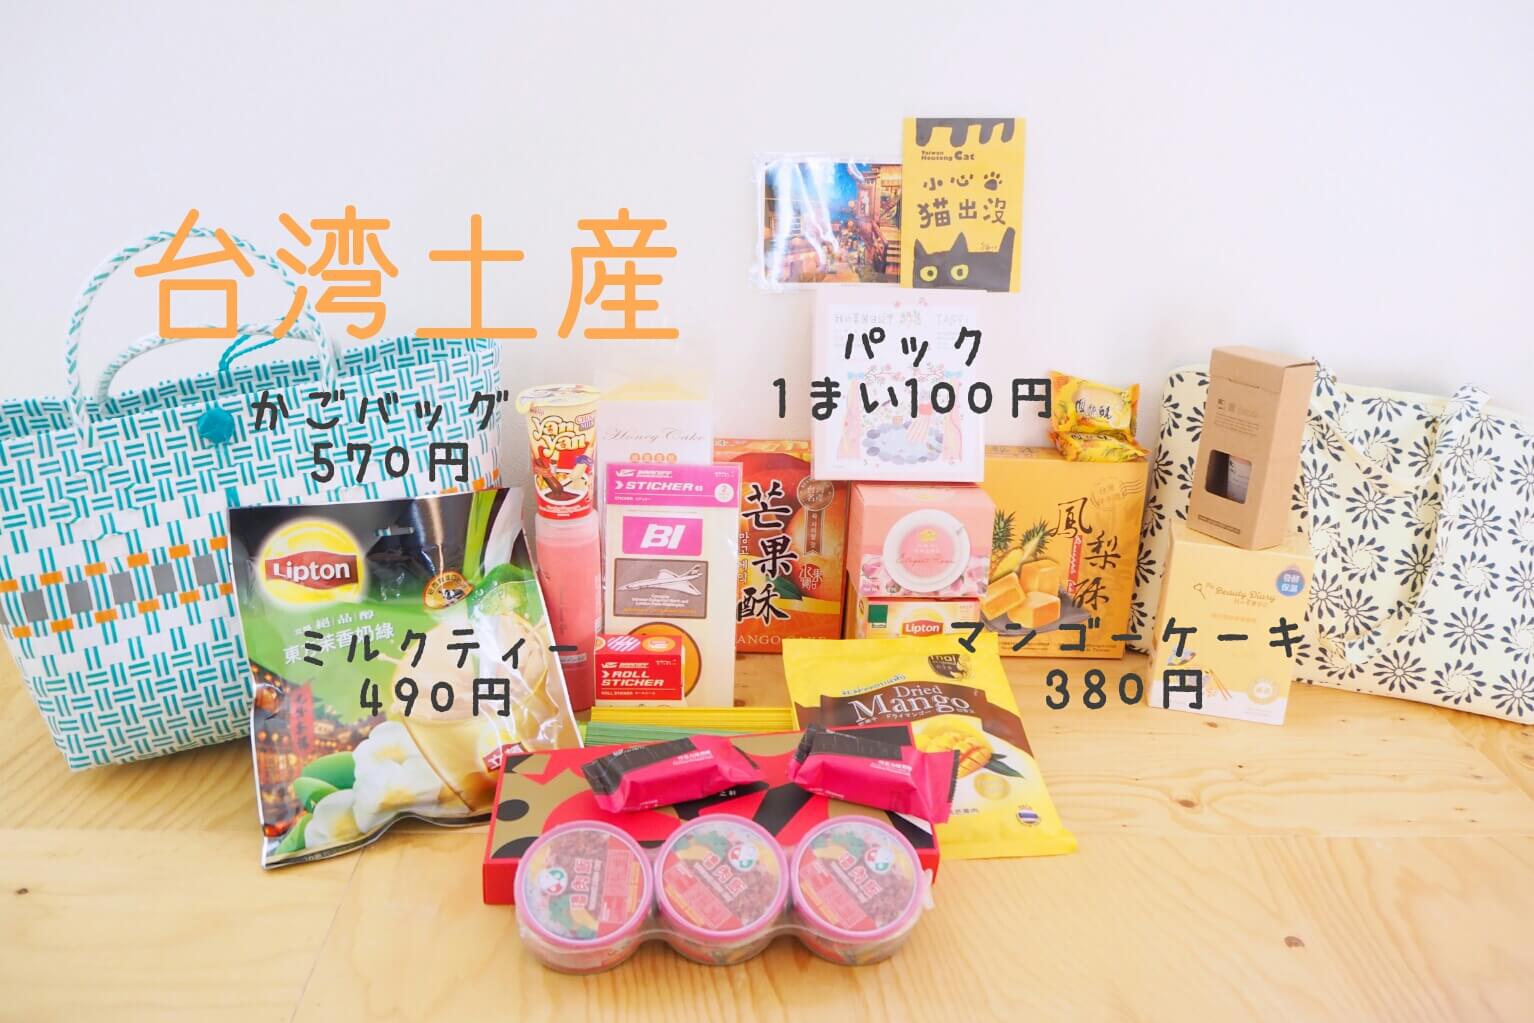 台湾のかわいいお土産15選 雑貨 女子向けコスメ お菓子など100円から買えるリスト 世界がキミを待っている セカキミ